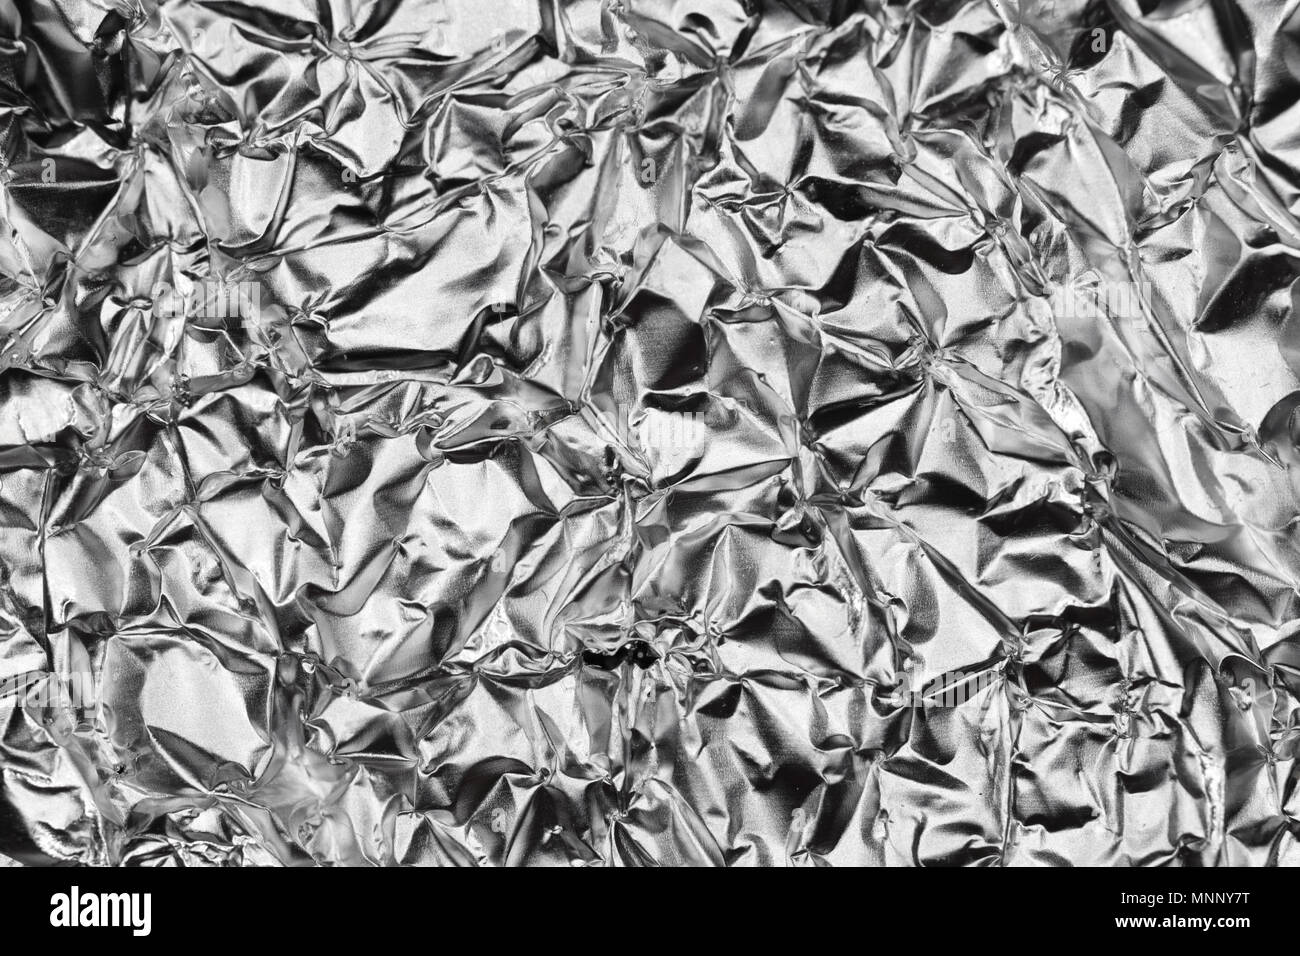 Silver Monochrome Crumpled Foil Texture. Metallic Black & White Background. Stock Photo